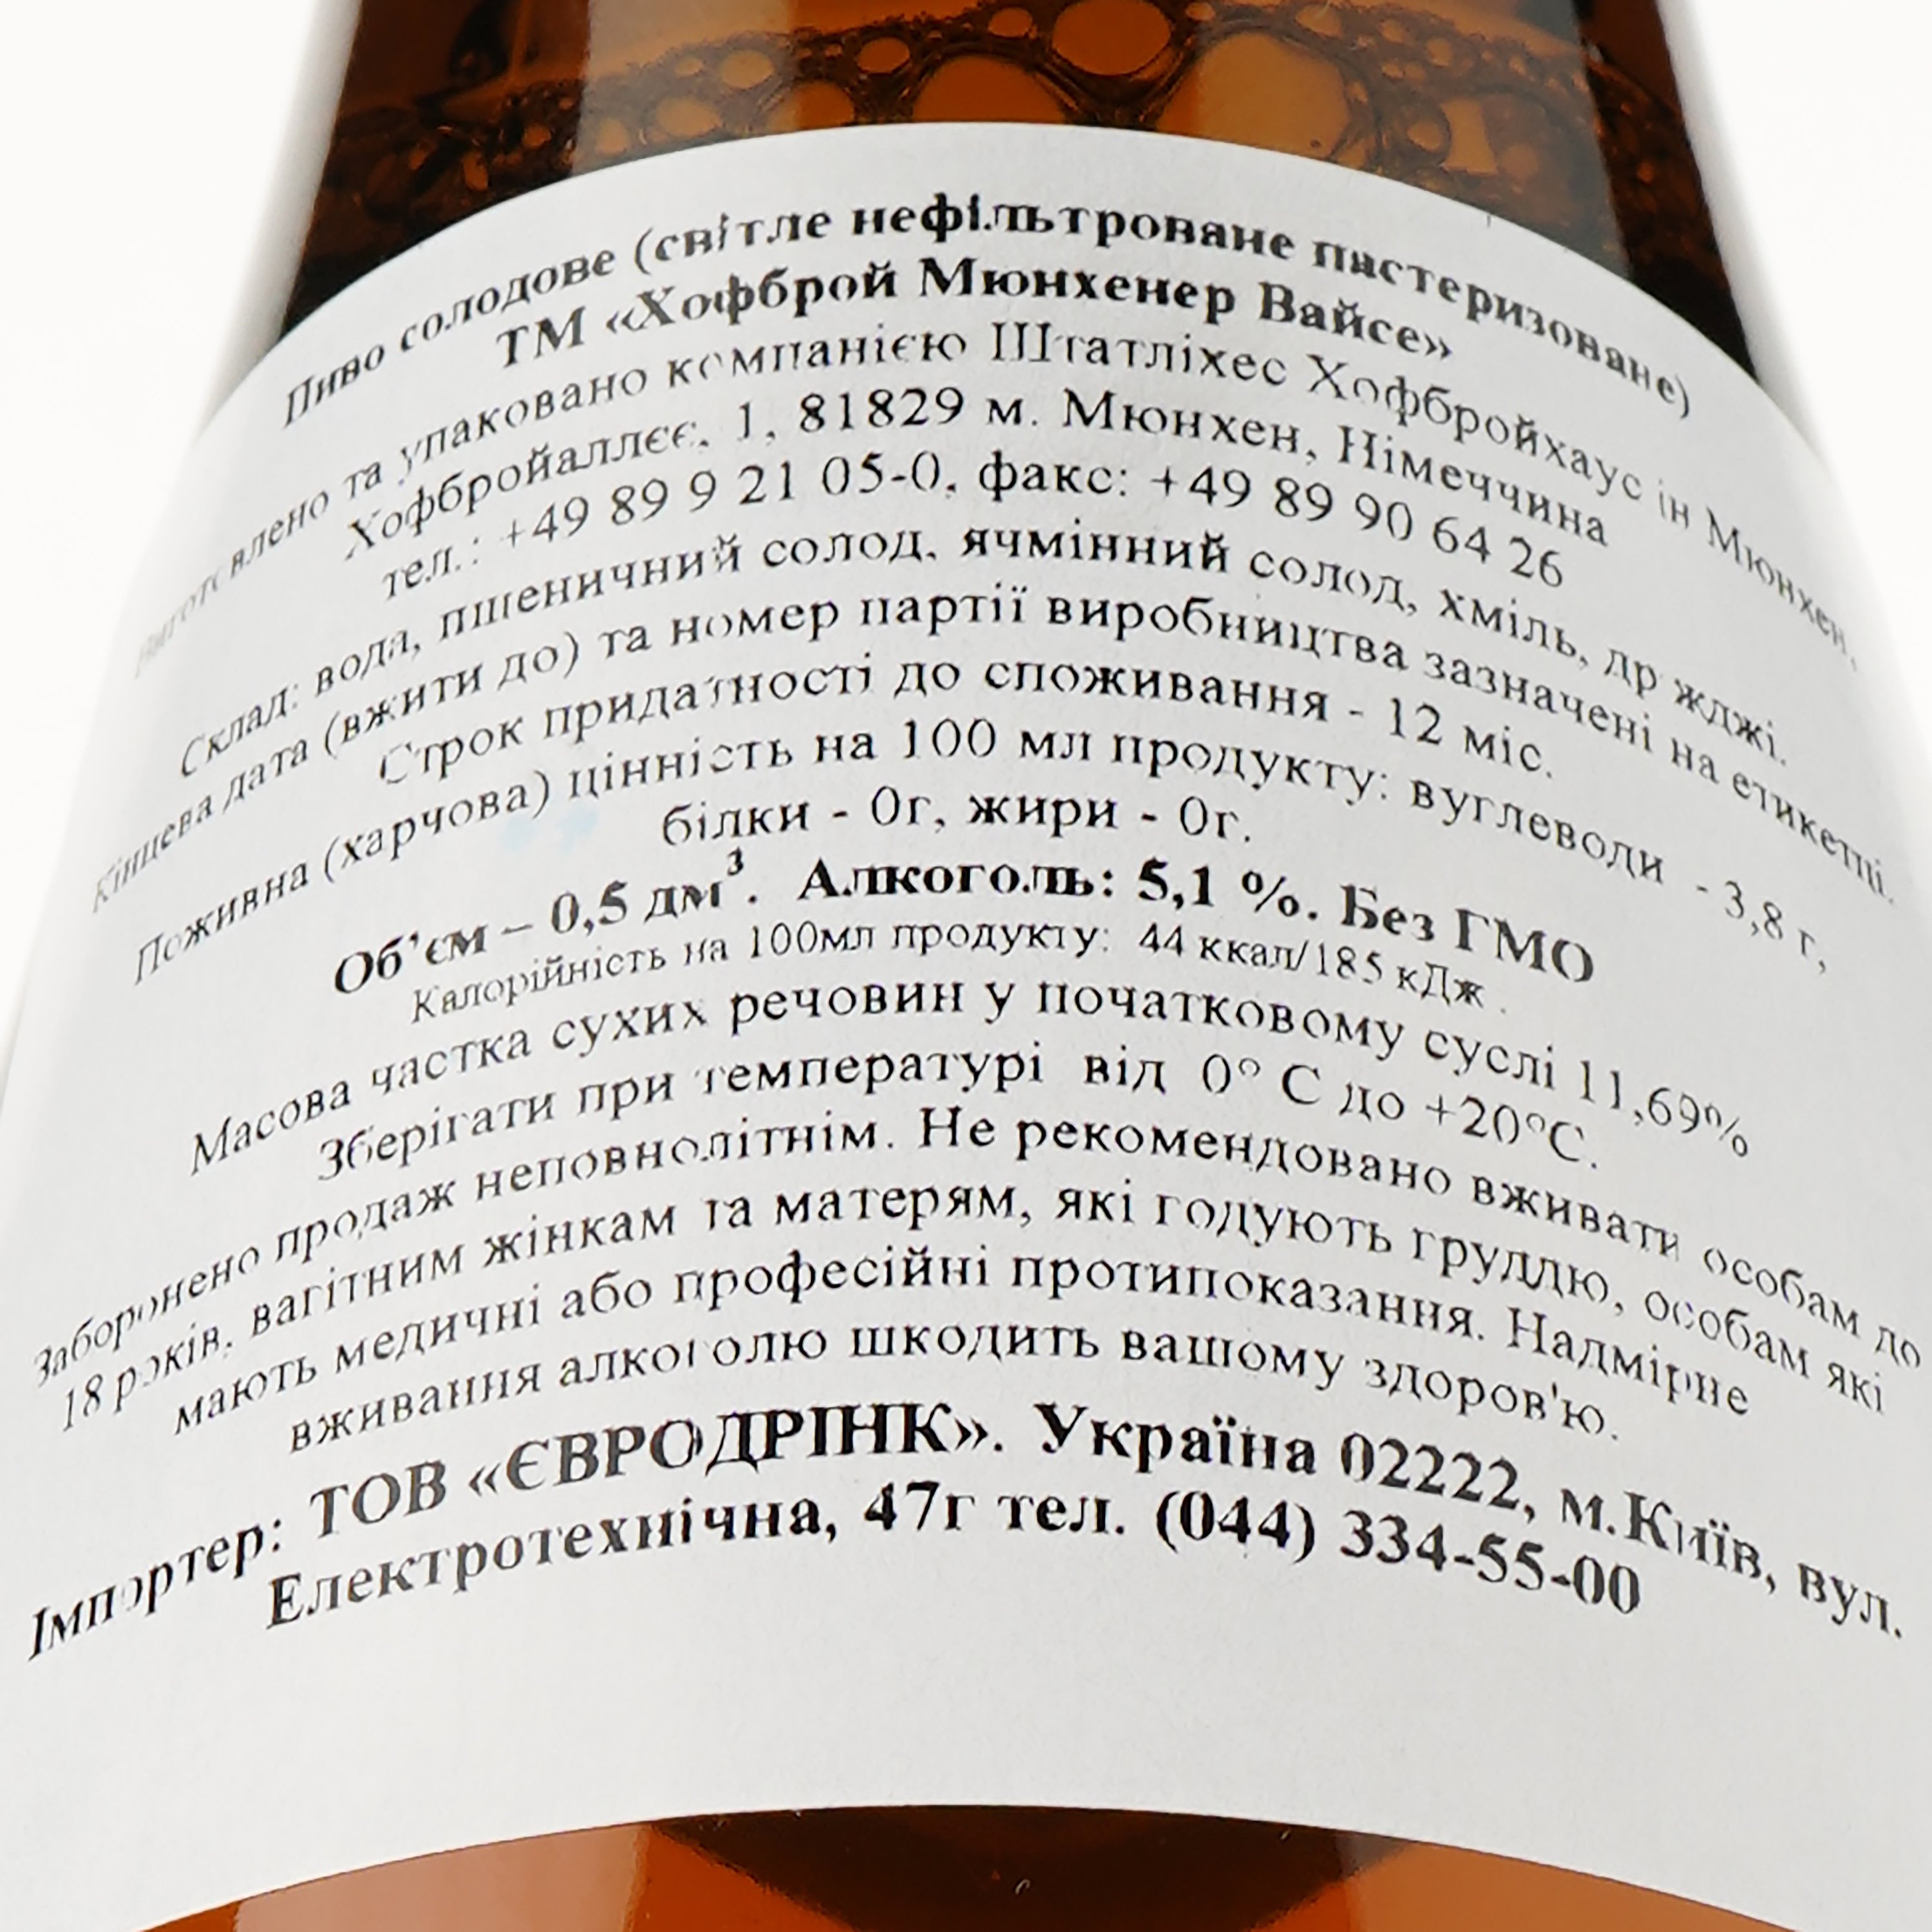 Пиво Hofbrau Munchner Weisse, светлое, нефильтрованное, 5,1%, 0,5 л (469134) - фото 3